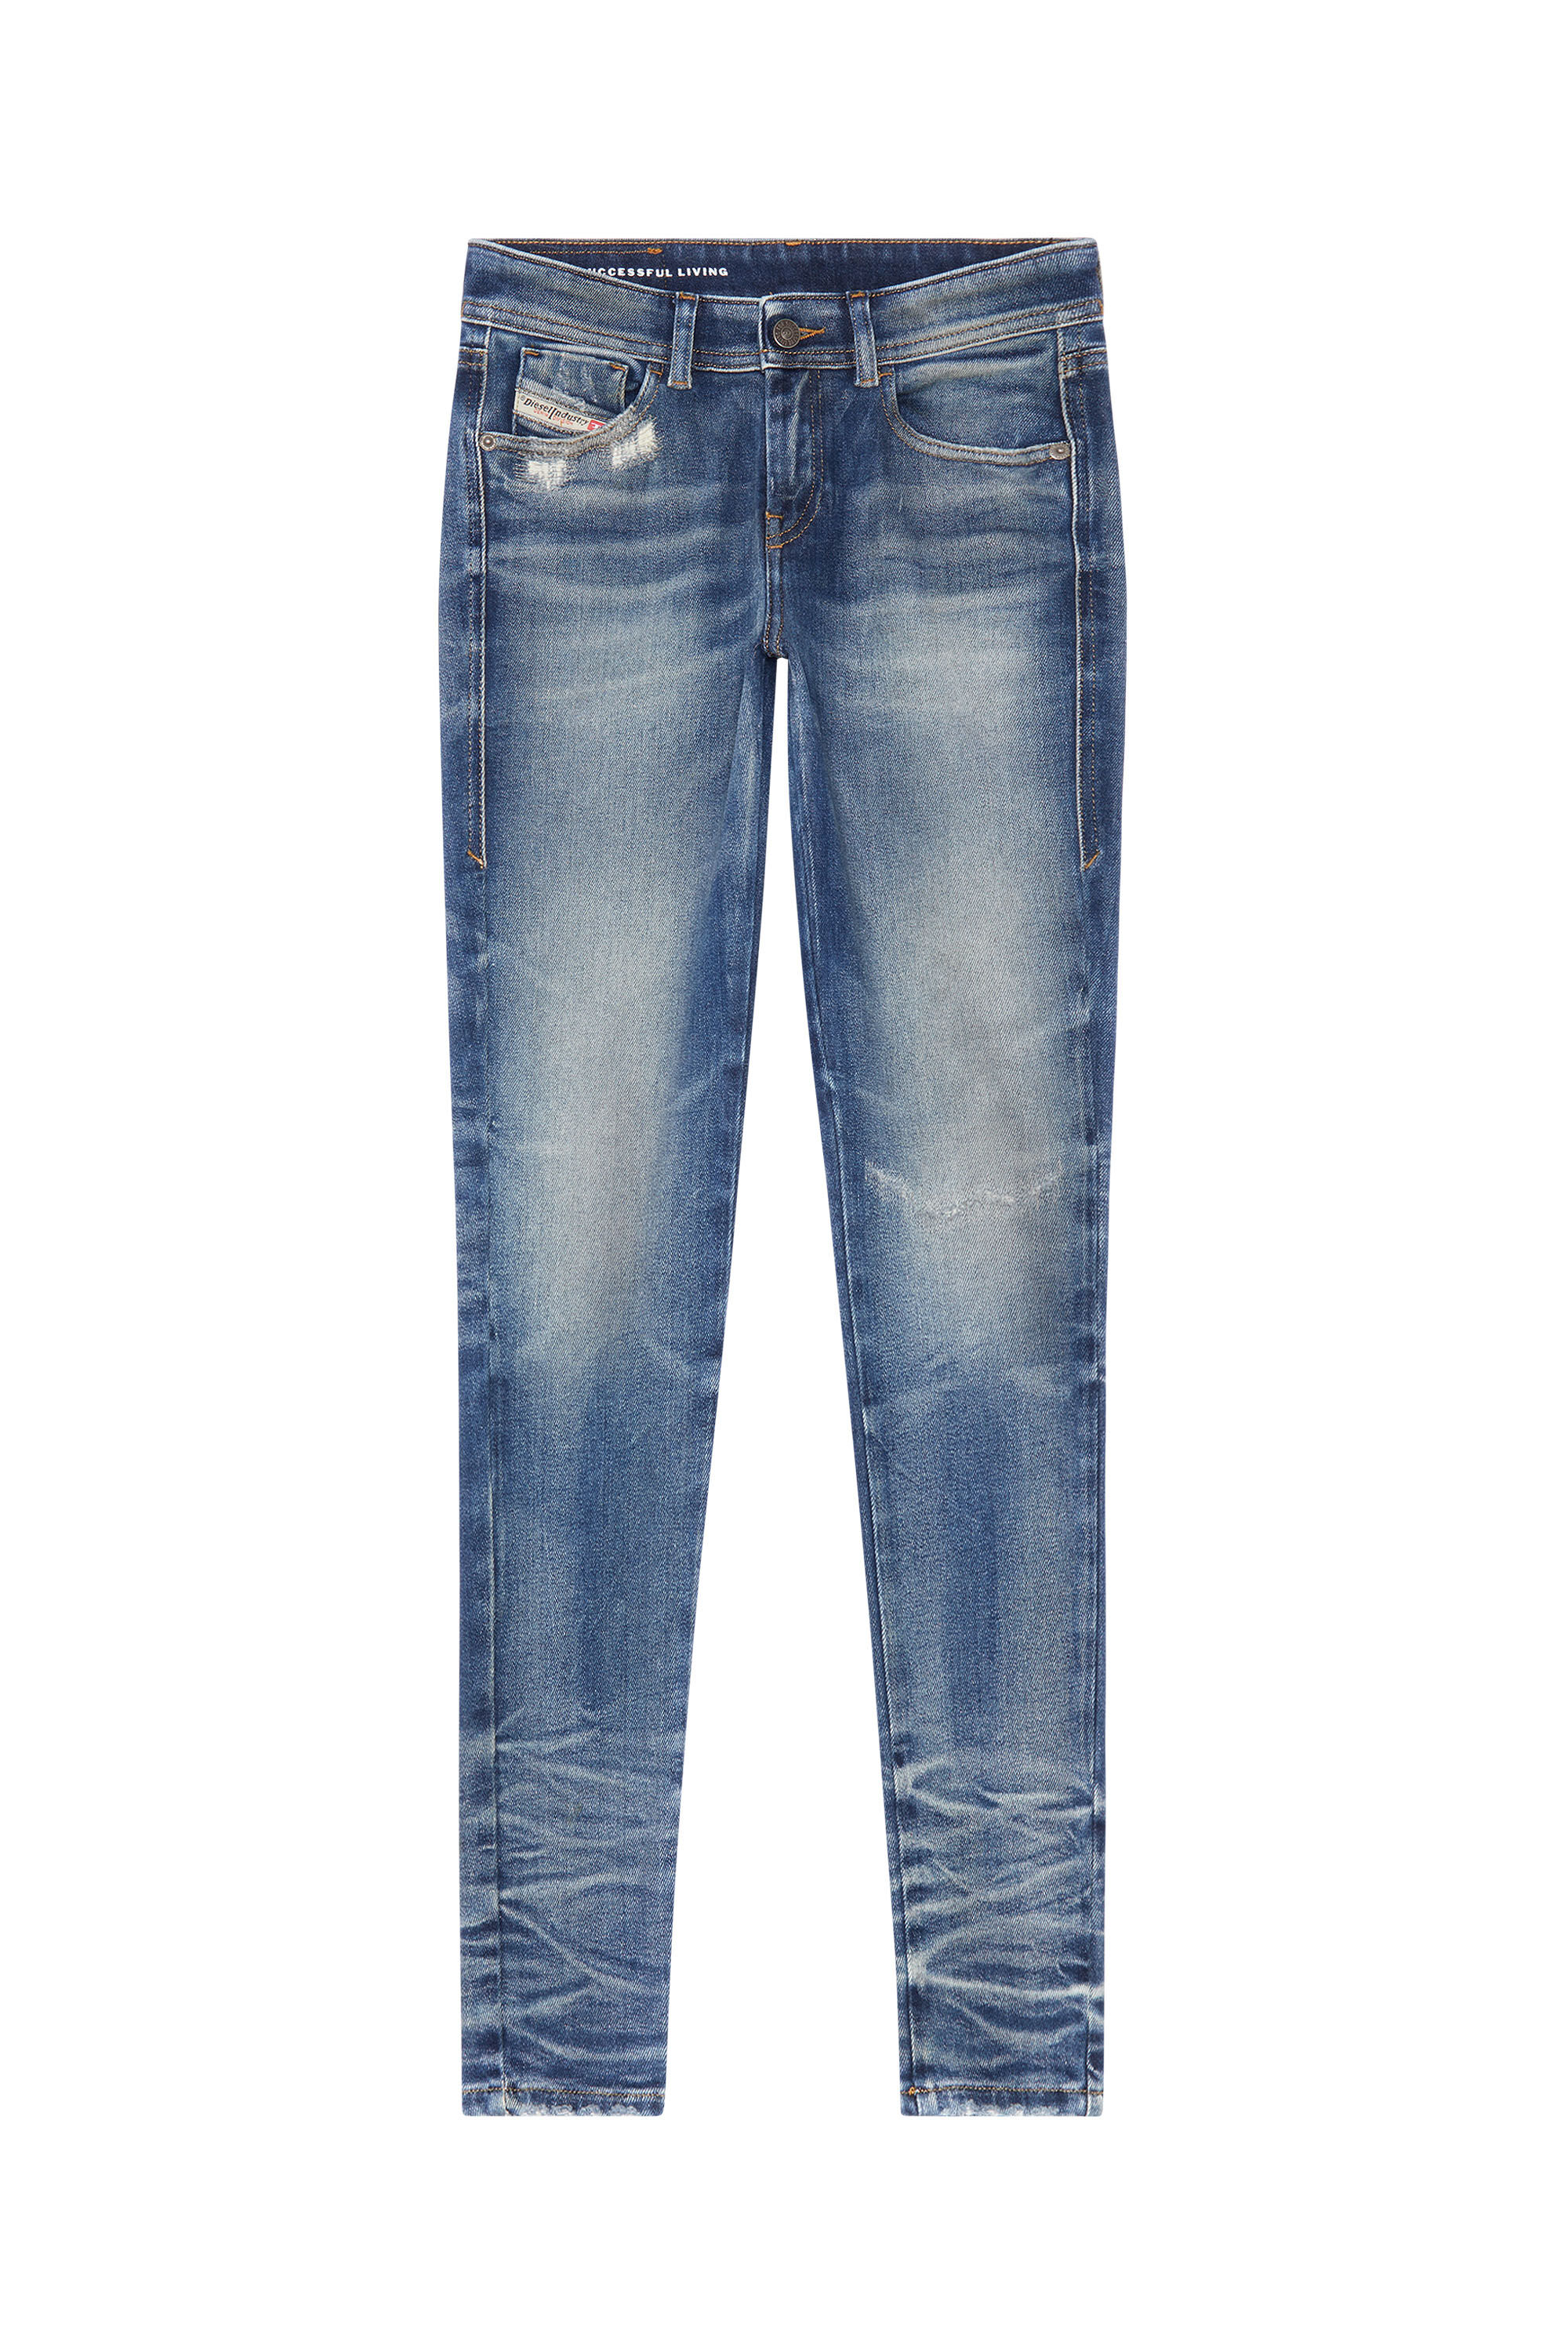 Diesel - Super skinny Jeans 2017 Slandy 09G14, Medium blue - Image 2